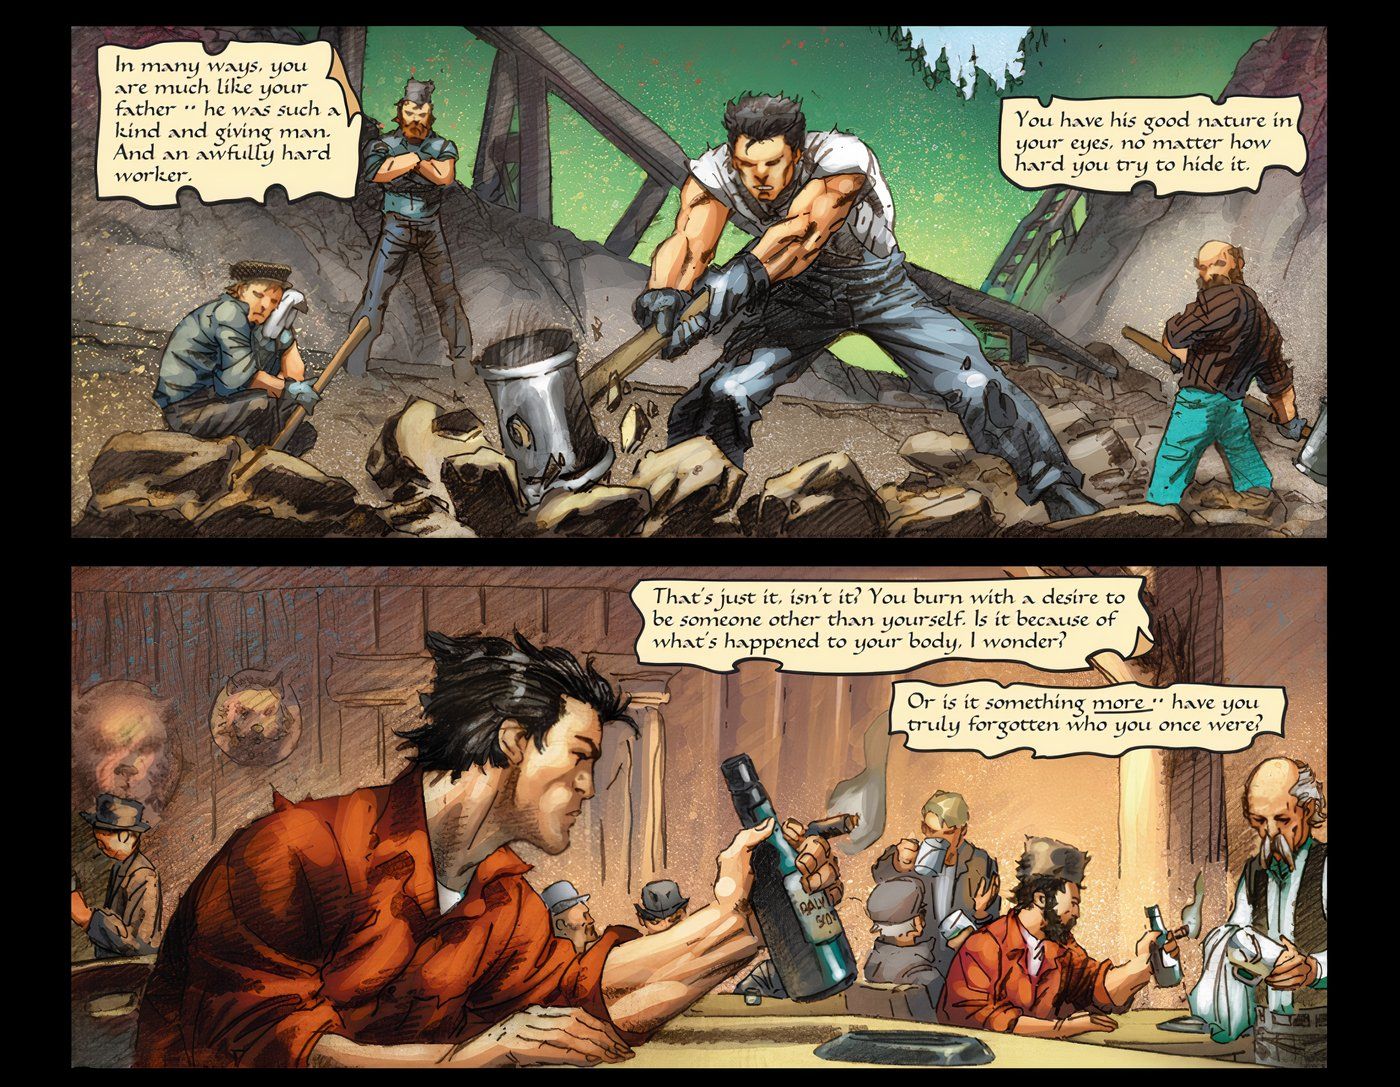 (Painel superior) Wolverine quebrando pedras na pedreira; (painel inferior) Wolverine no bar depois do trabalho.